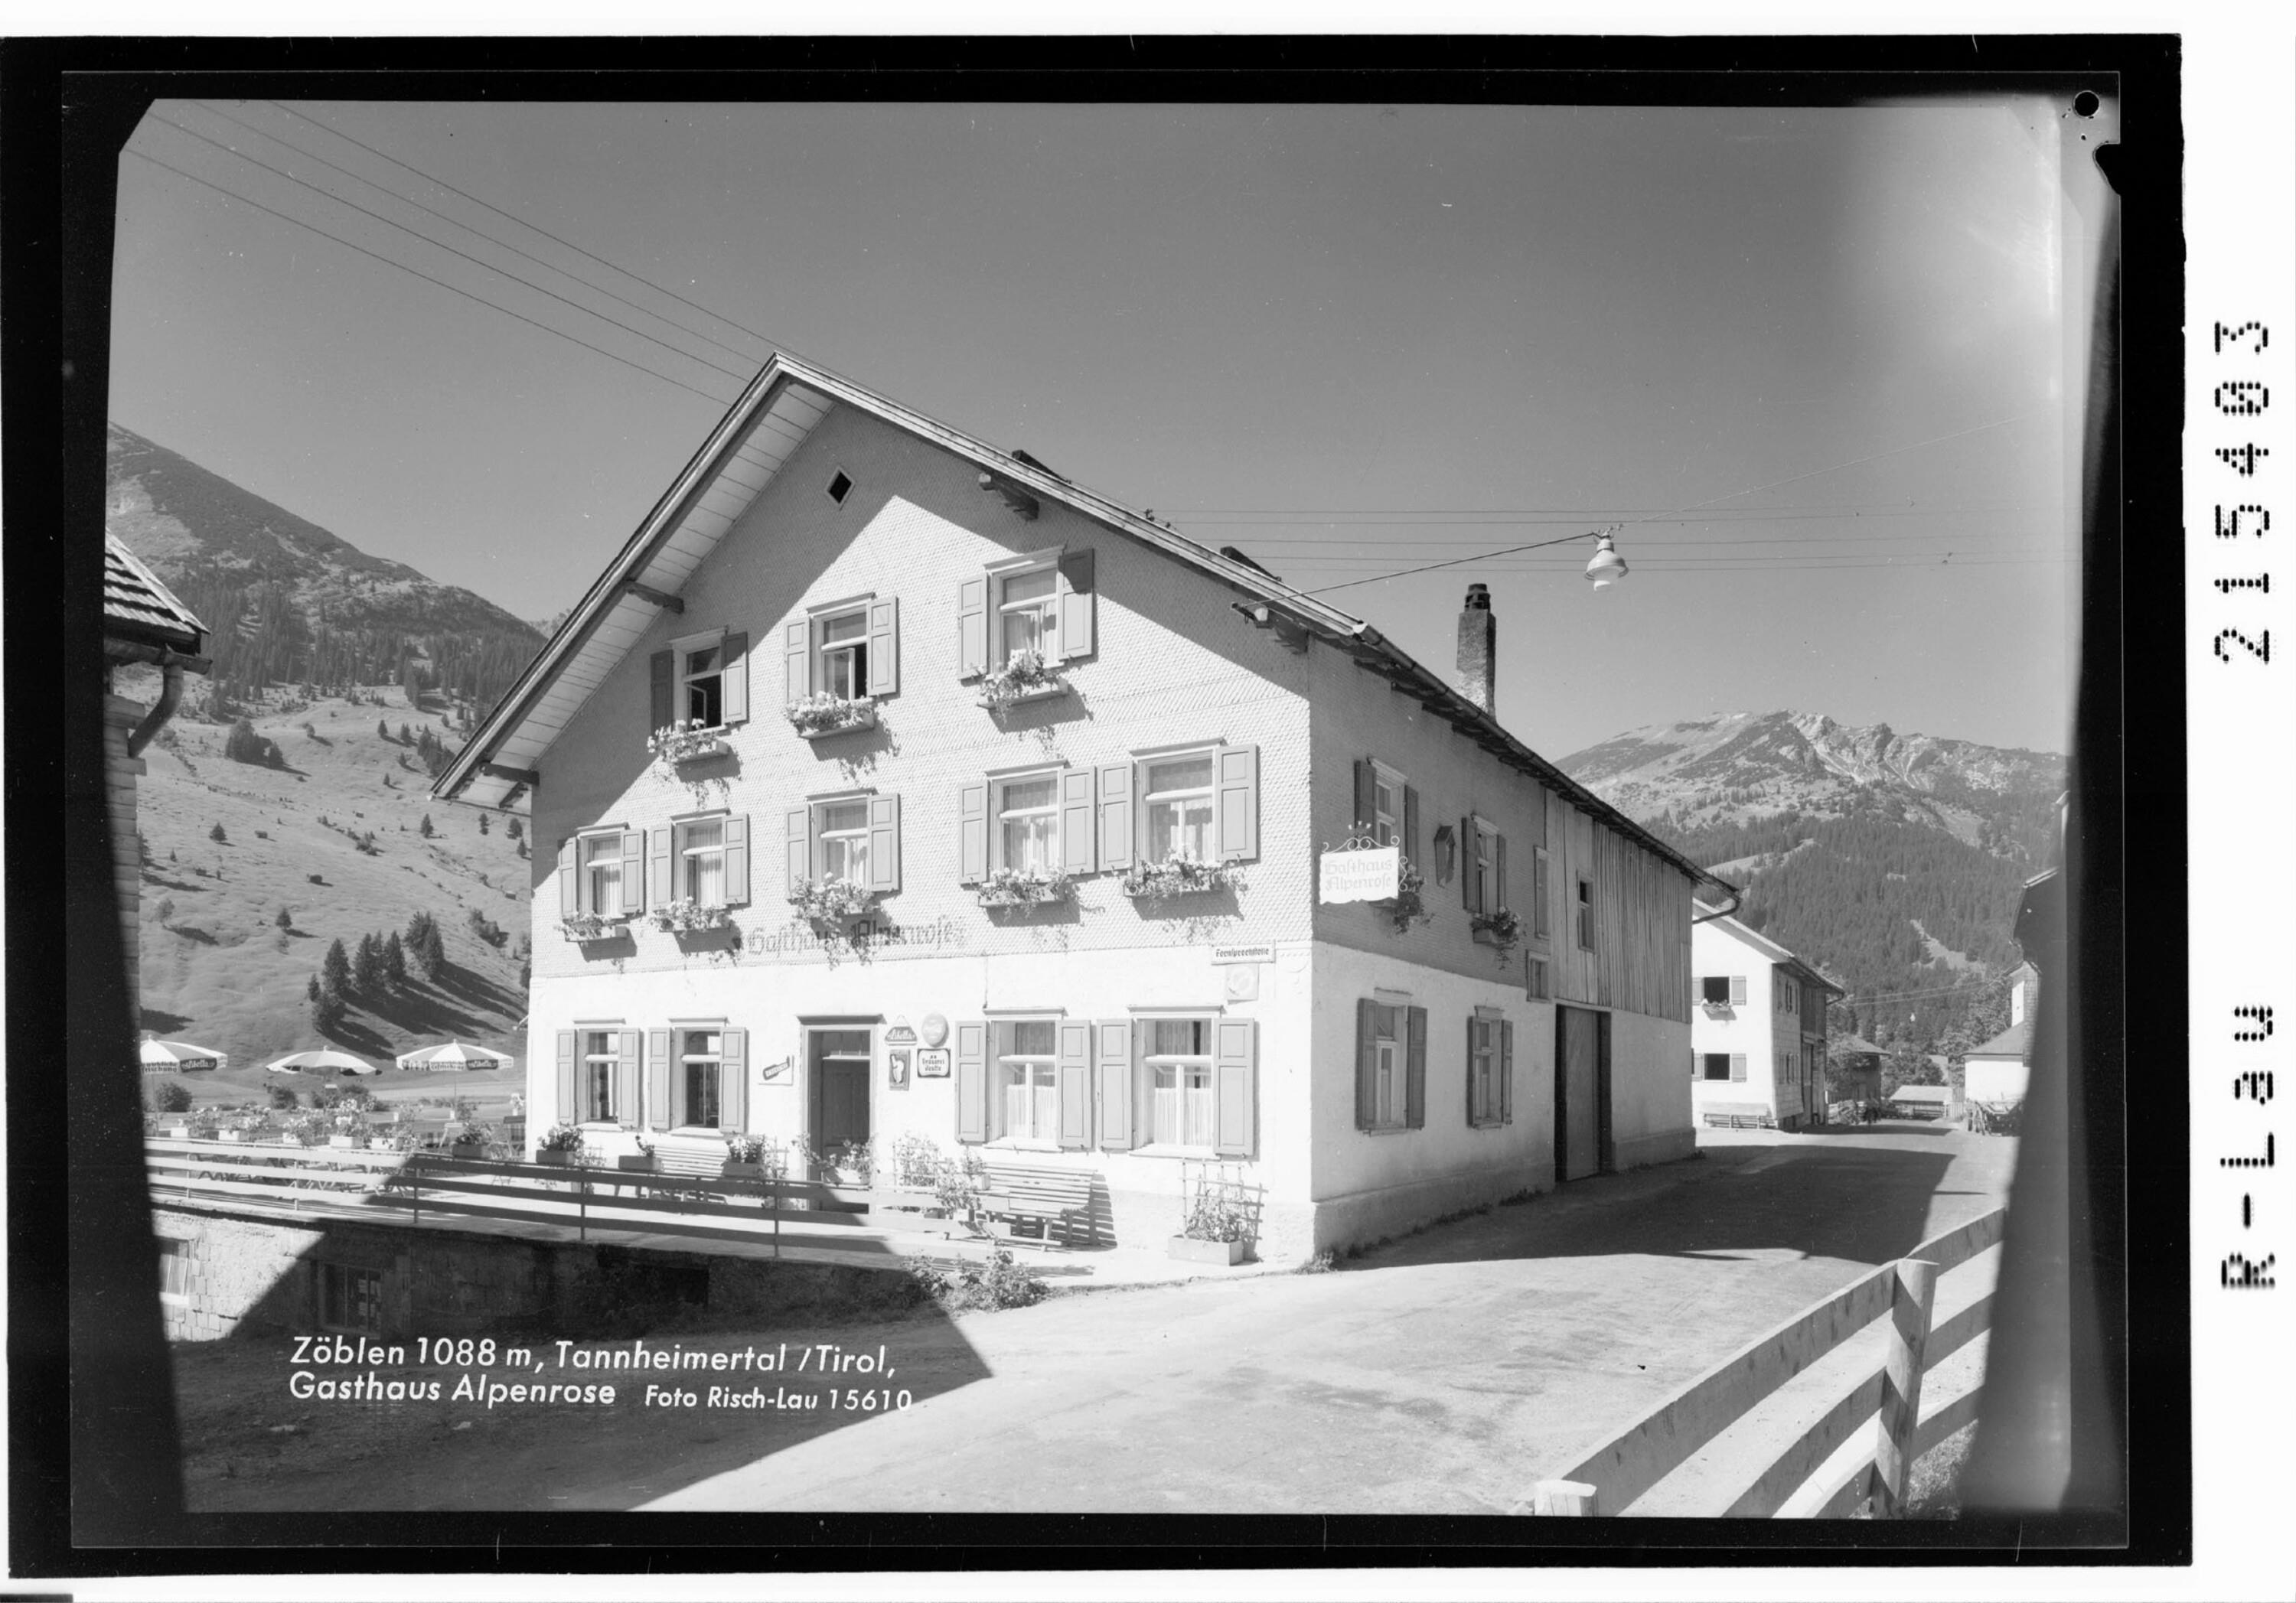 Zöblen 1088 m, Tannheimertal / Tirol, Gasthaus Alpenrose></div>


    <hr>
    <div class=